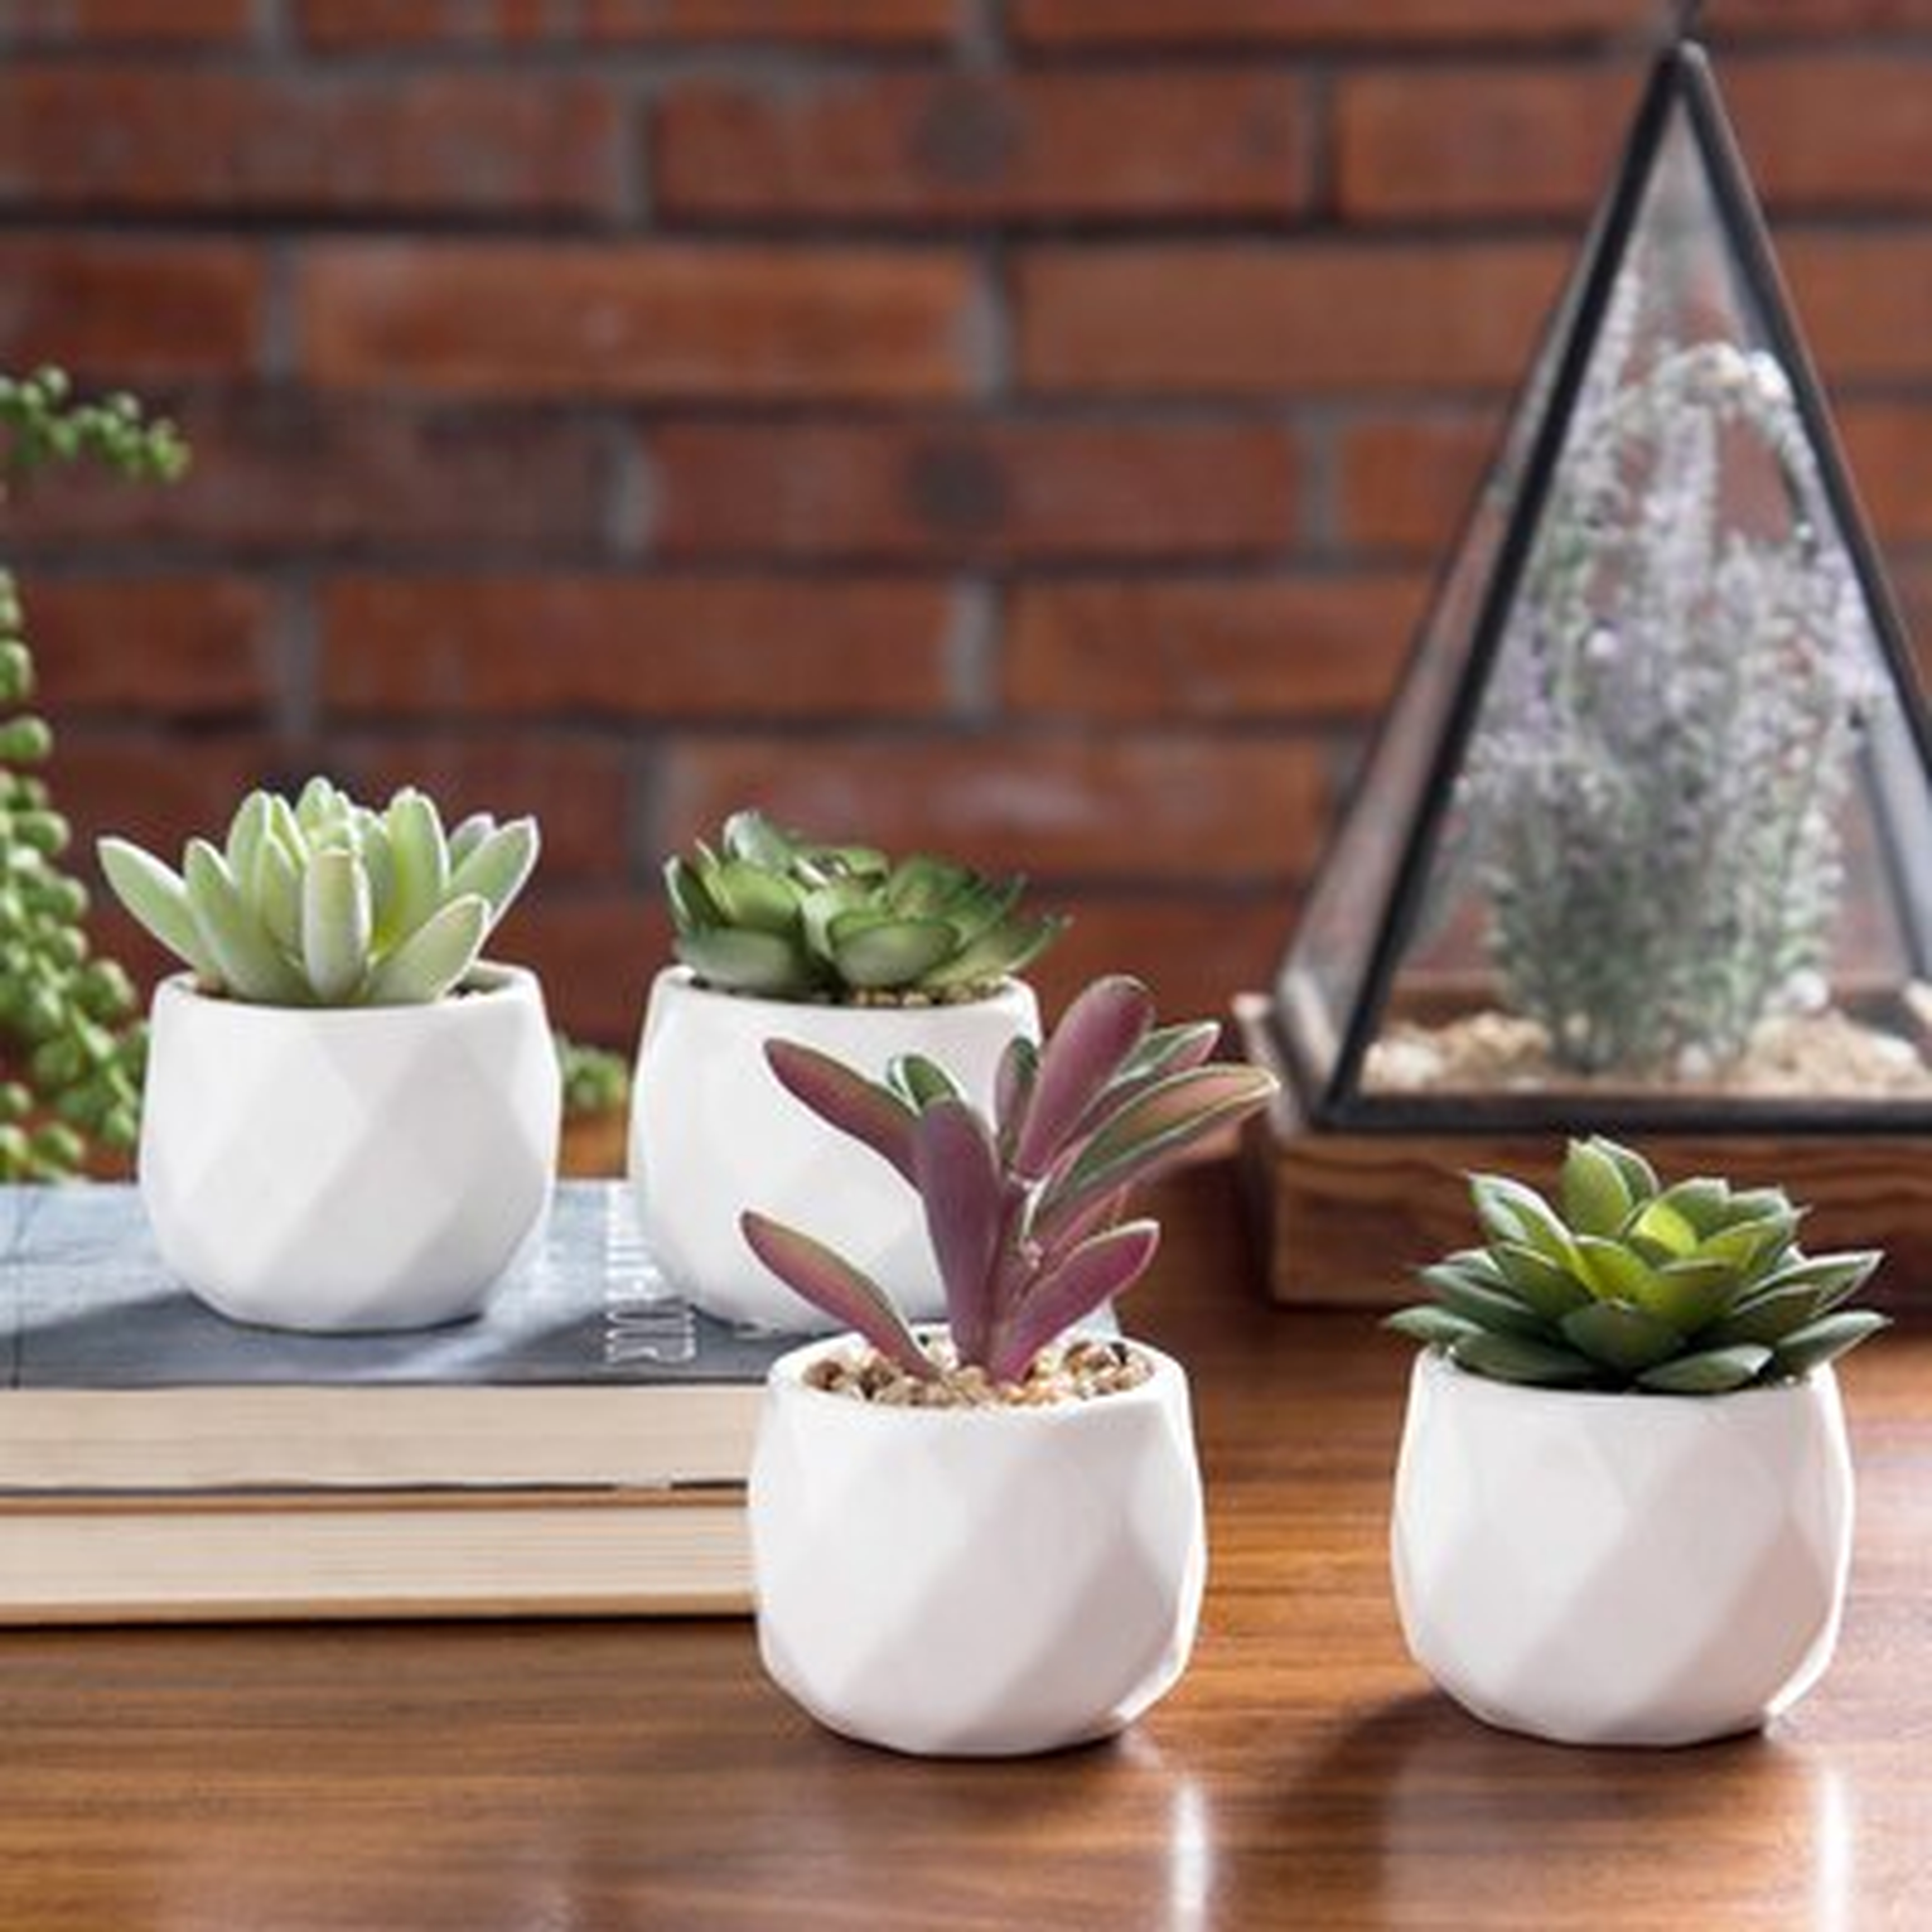 4 - Piece Artificial Succulent Plant in Pot Set - Wayfair